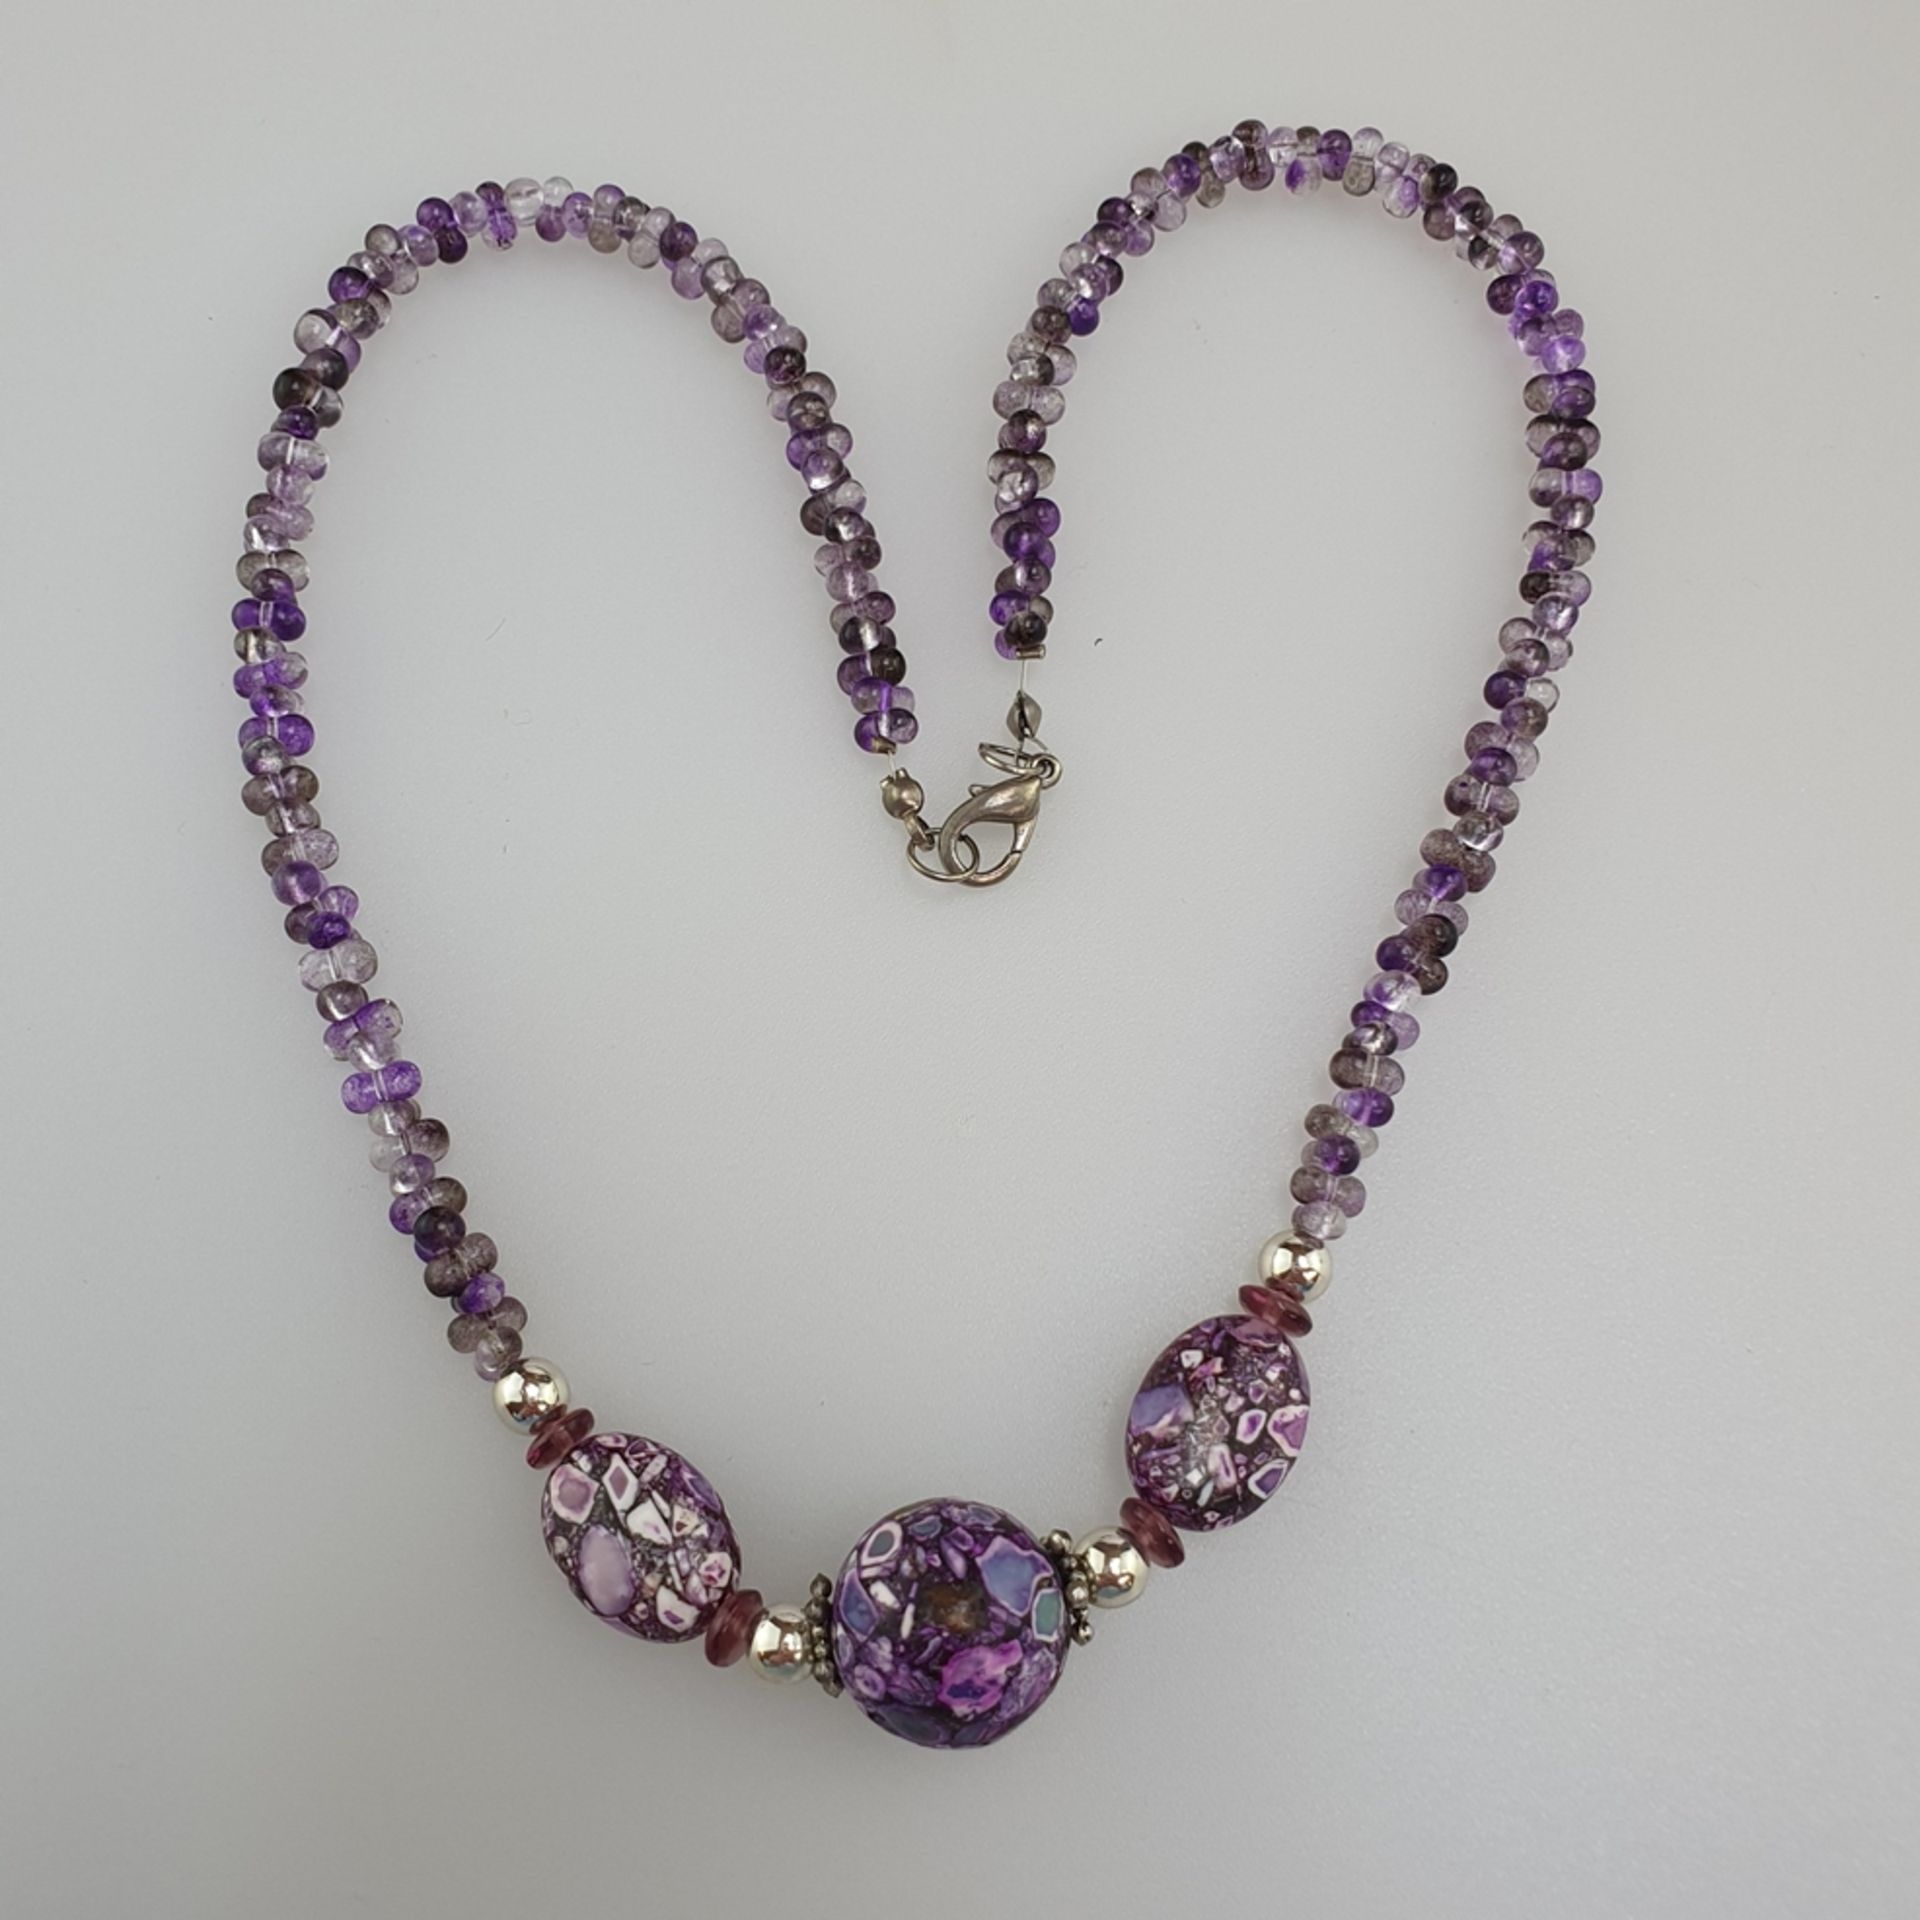 Halskette - Kette aus Amethystperlen, zentral mit drei ornamentalen Elementen, Karabinerverschluß, - Bild 3 aus 4